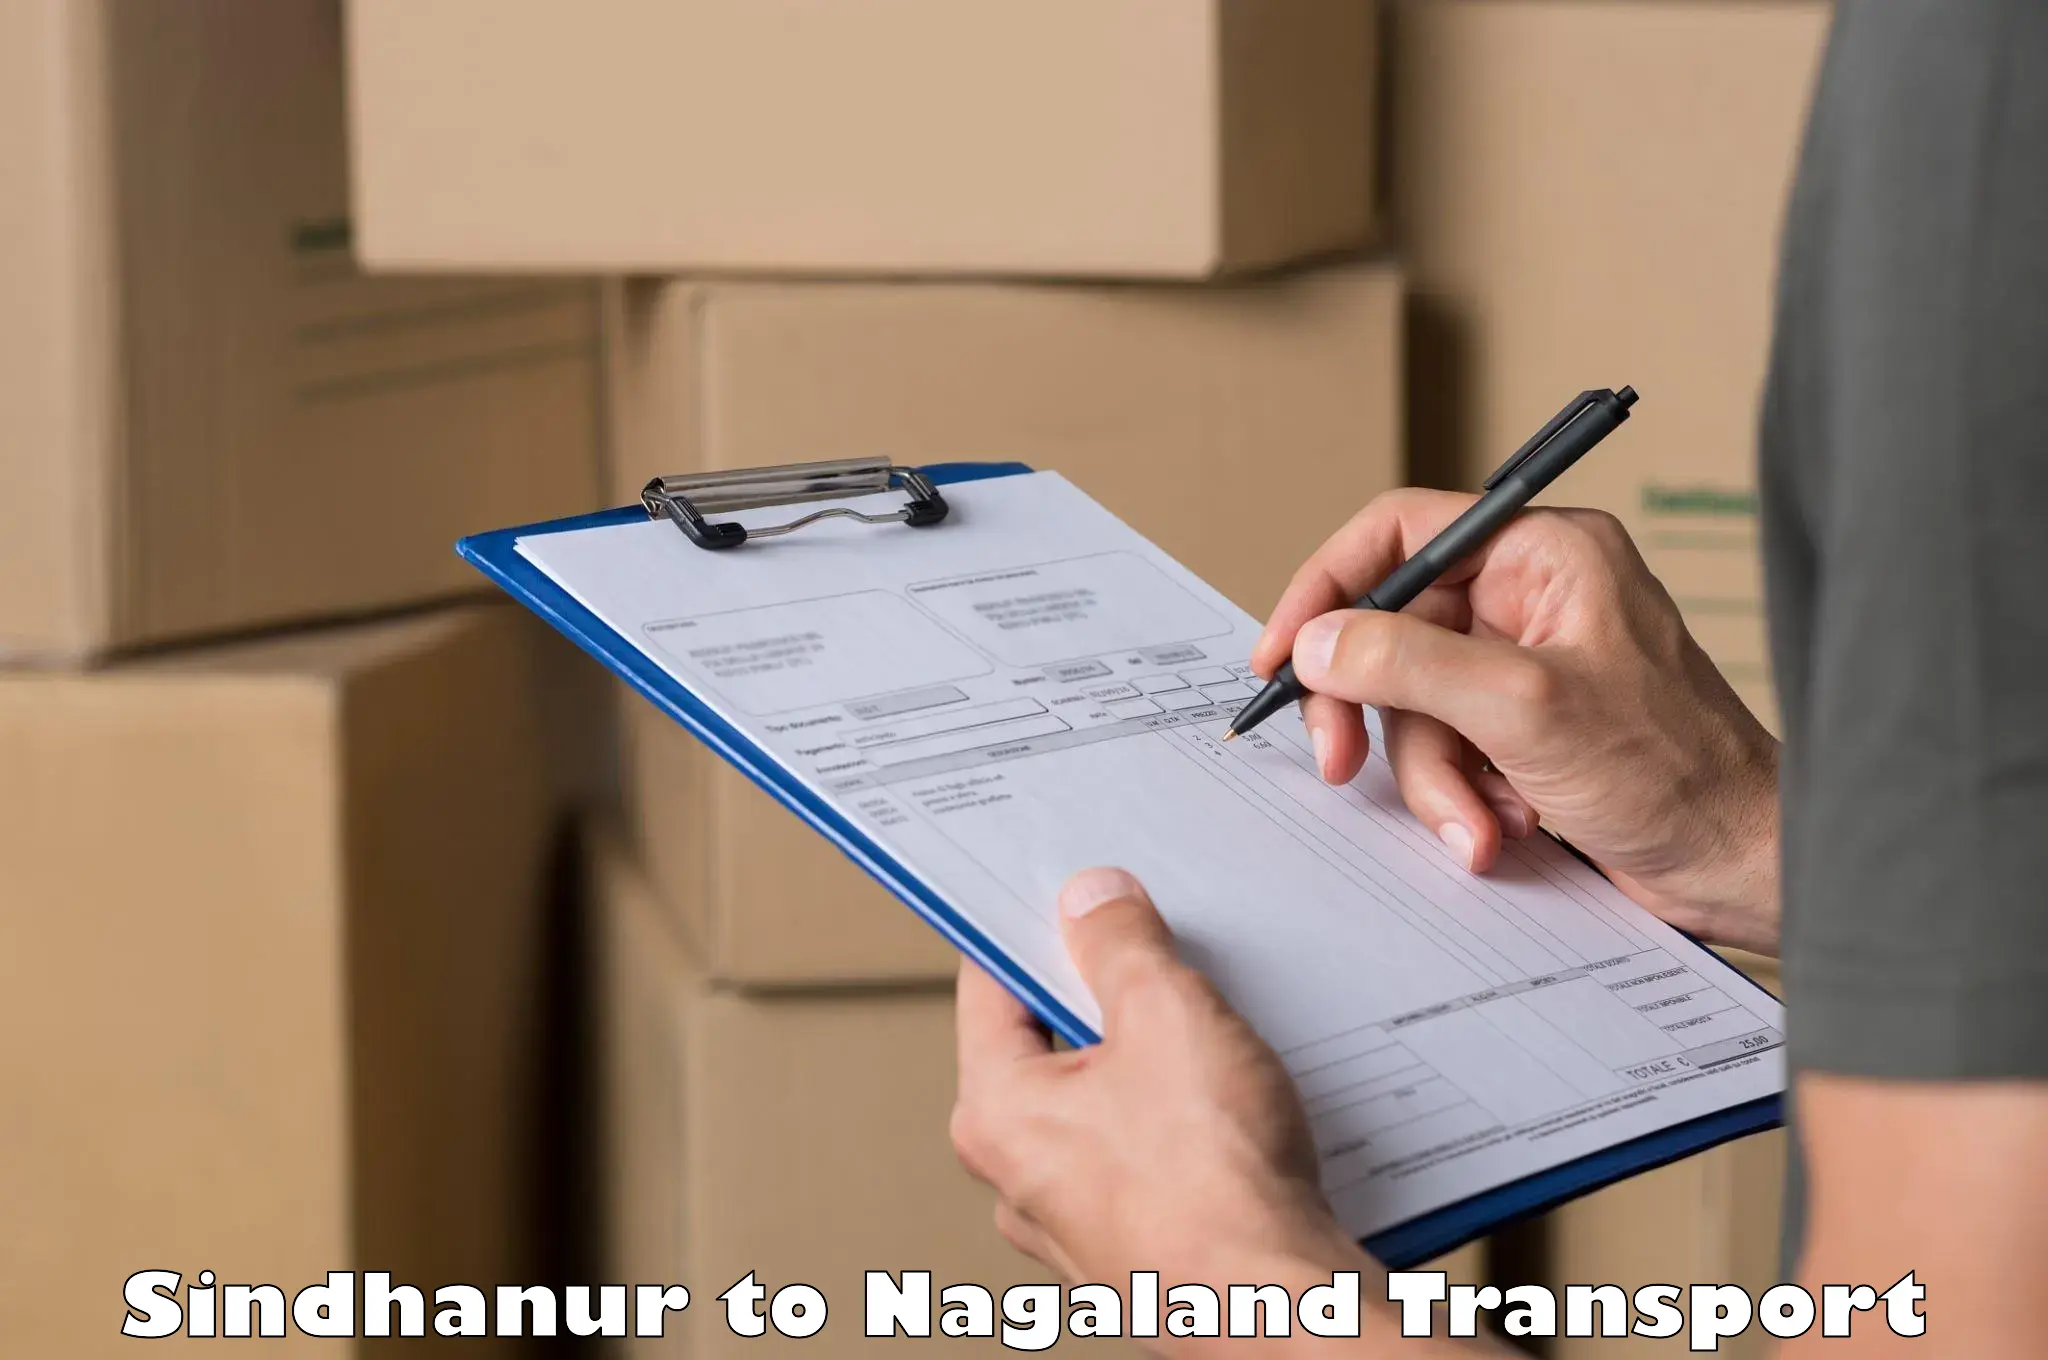 Online transport in Sindhanur to NIT Nagaland